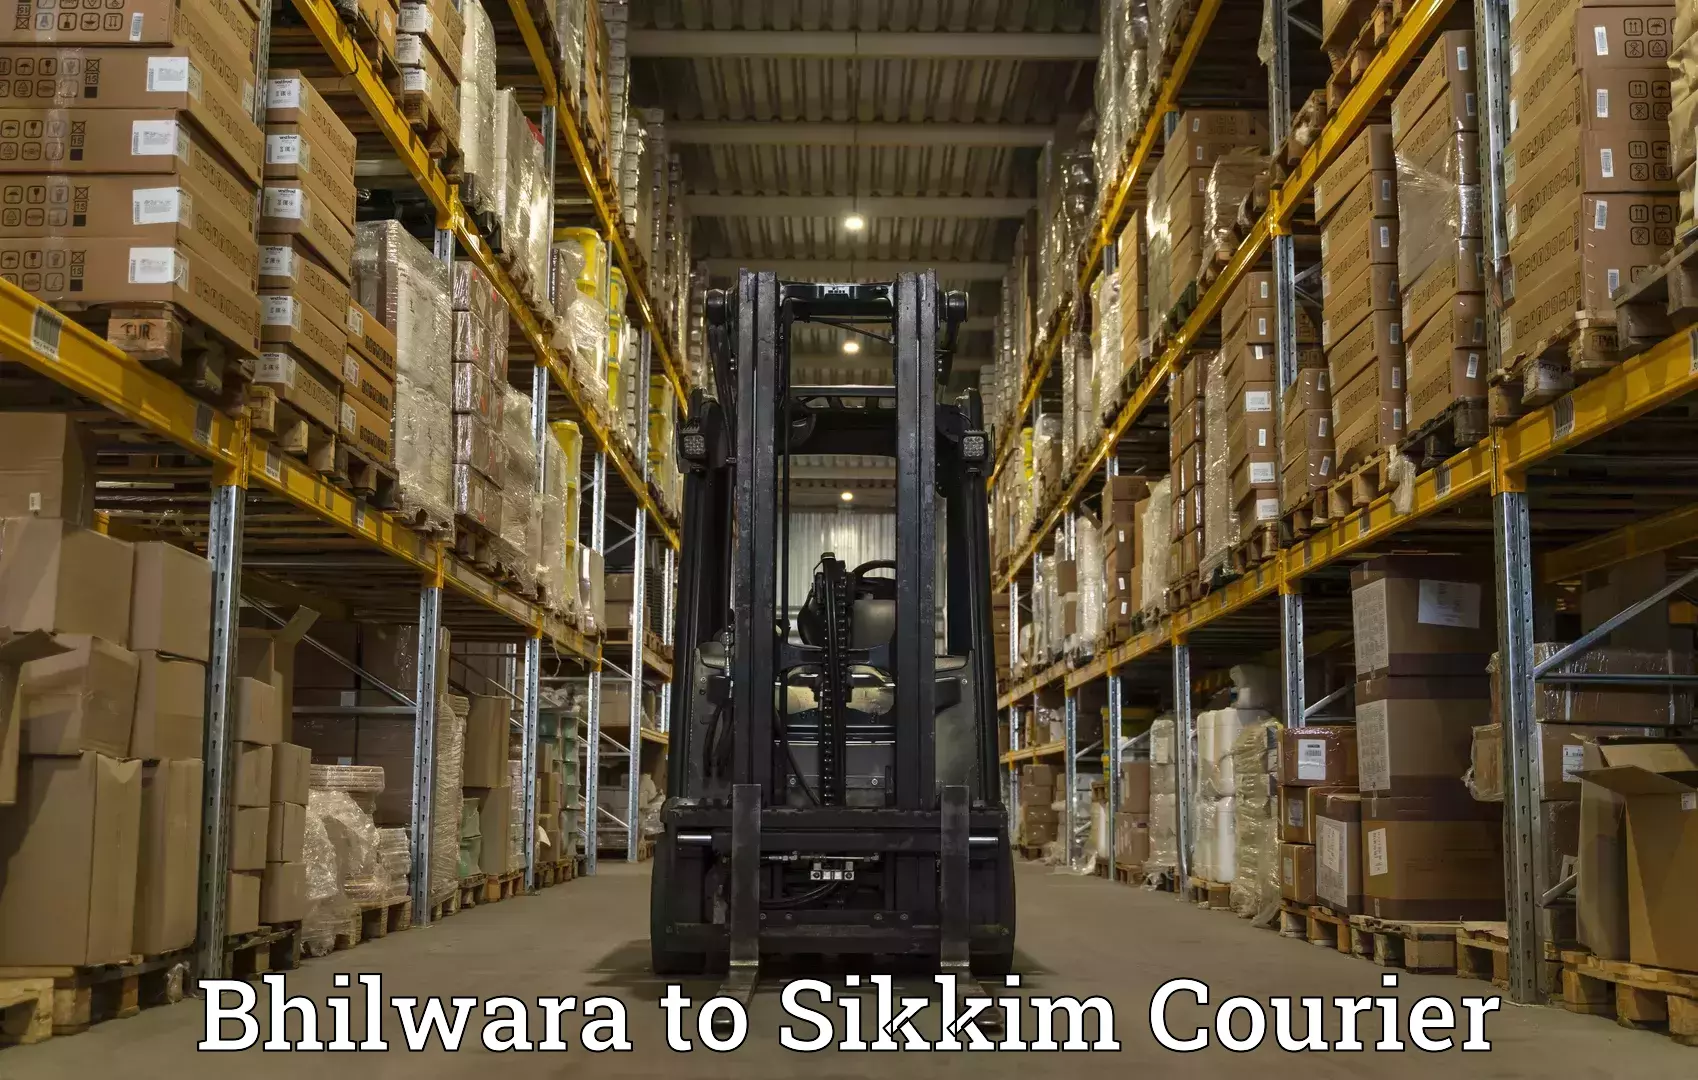 Individual parcel service Bhilwara to Sikkim